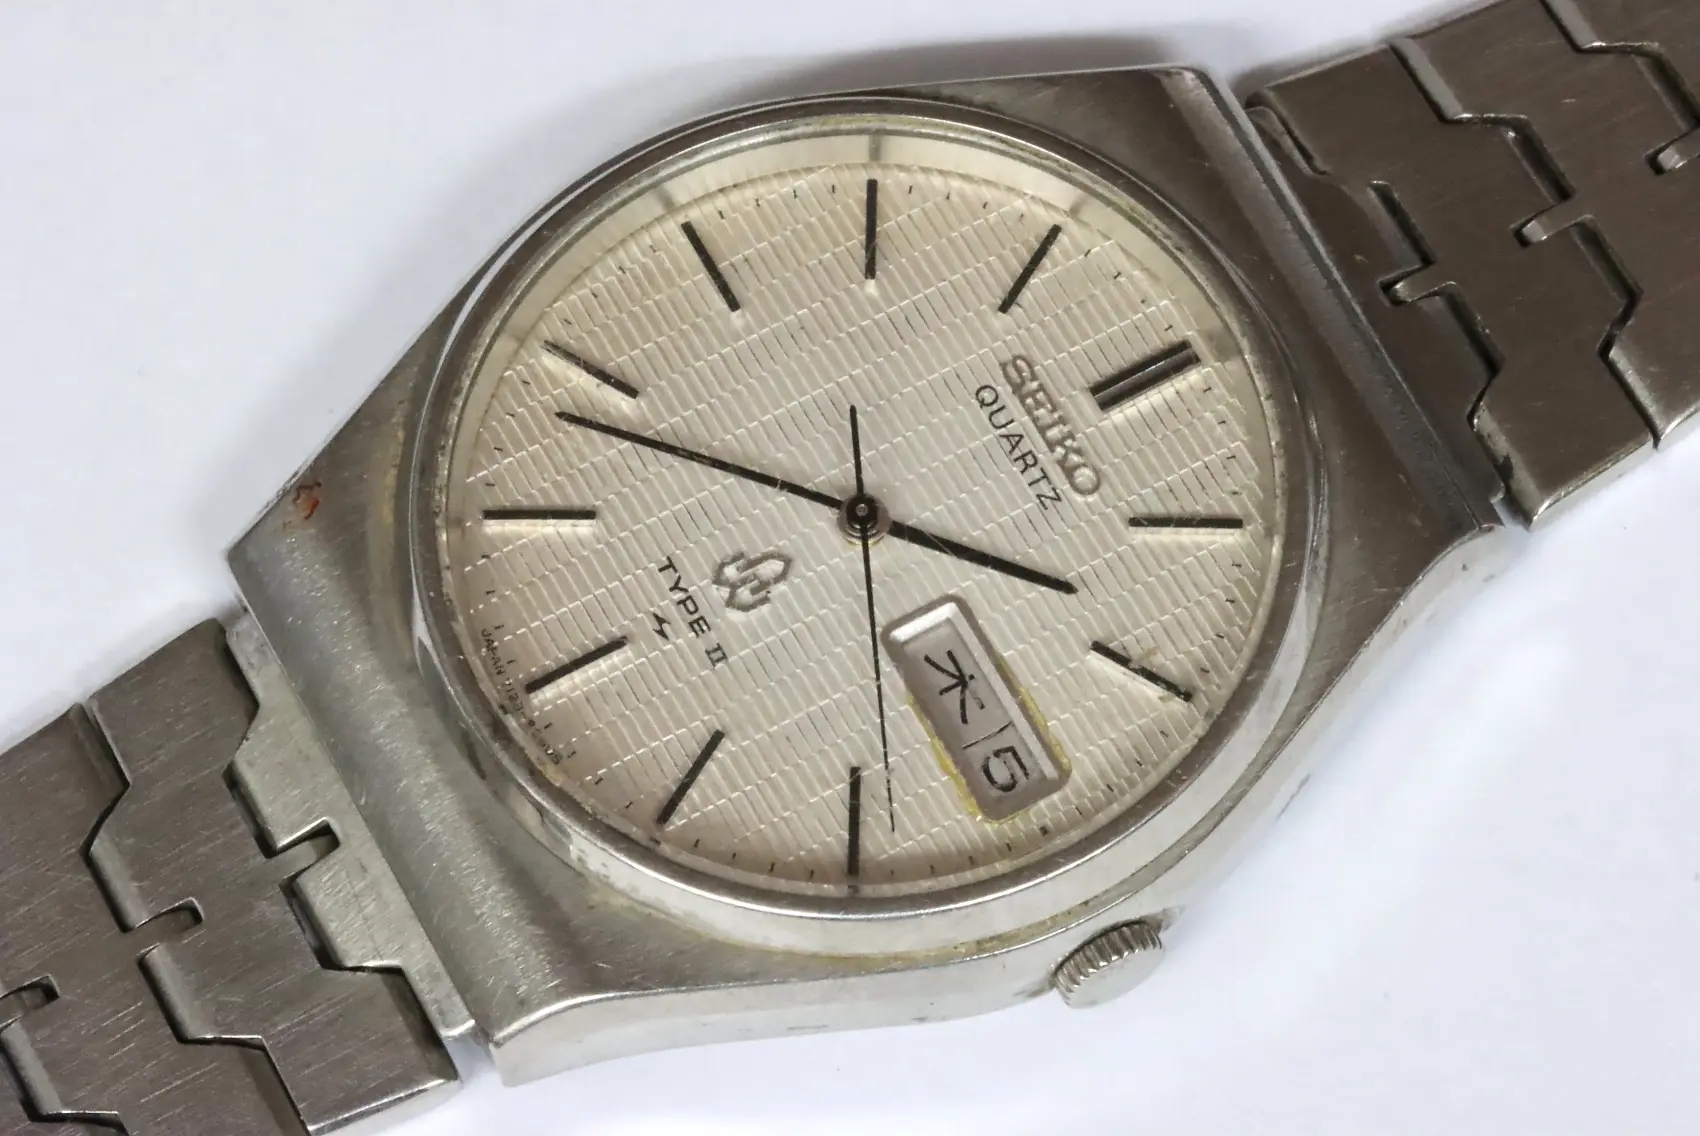 Seiko 7123-8090 quartz men's watch for spares restore